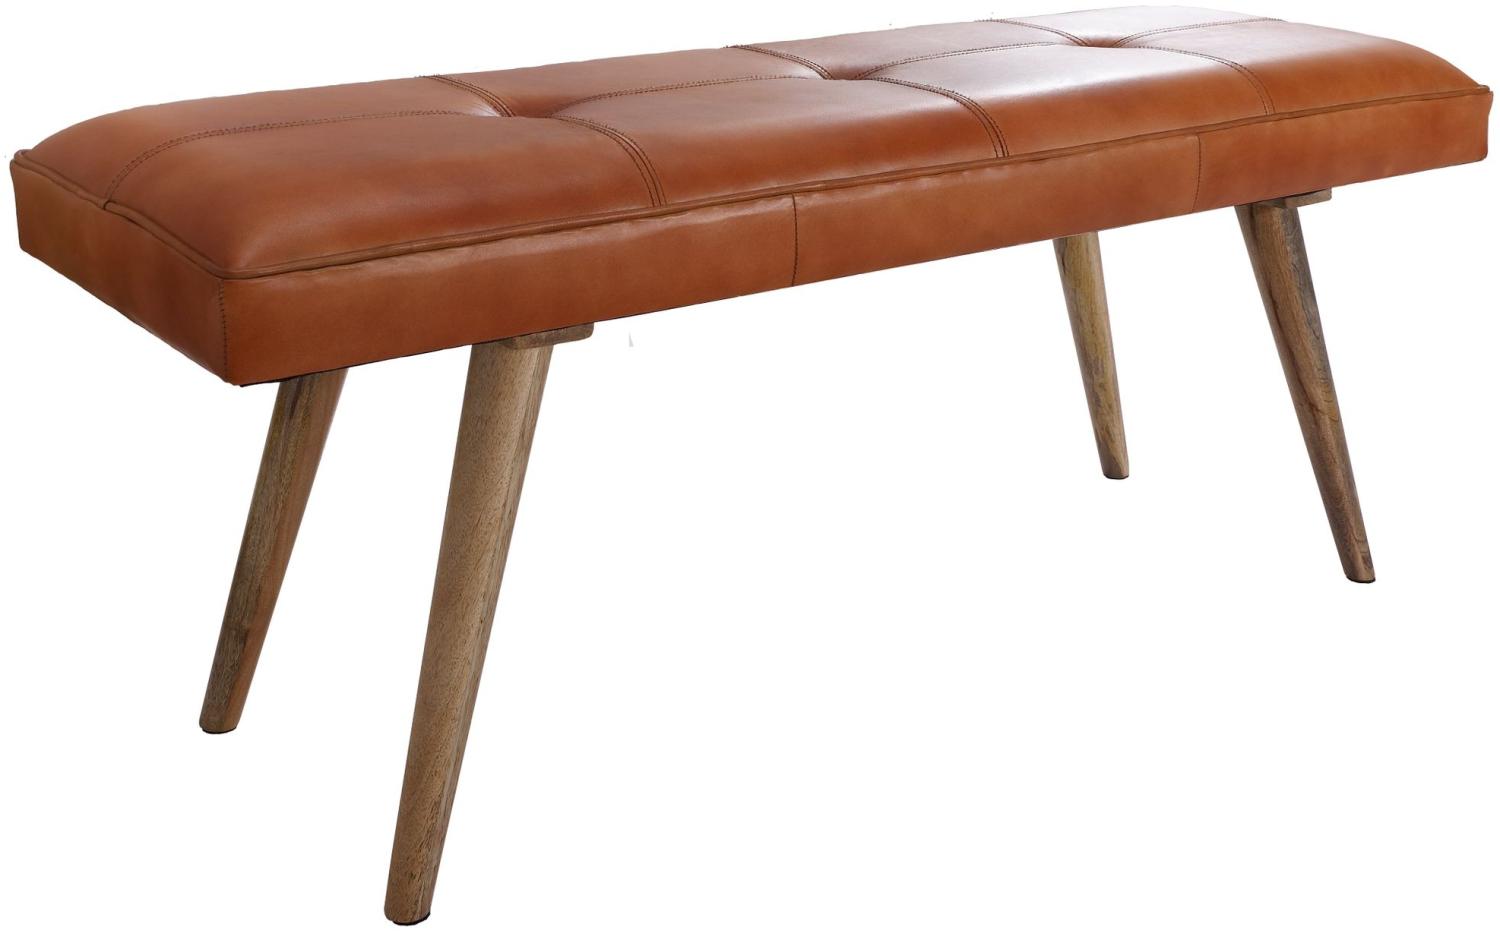 KADIMA DESIGN Retro-Sitzbank aus Ziegenleder und massivem Holz - Stilvolles Unikat für mehr Komfort. Bild 1